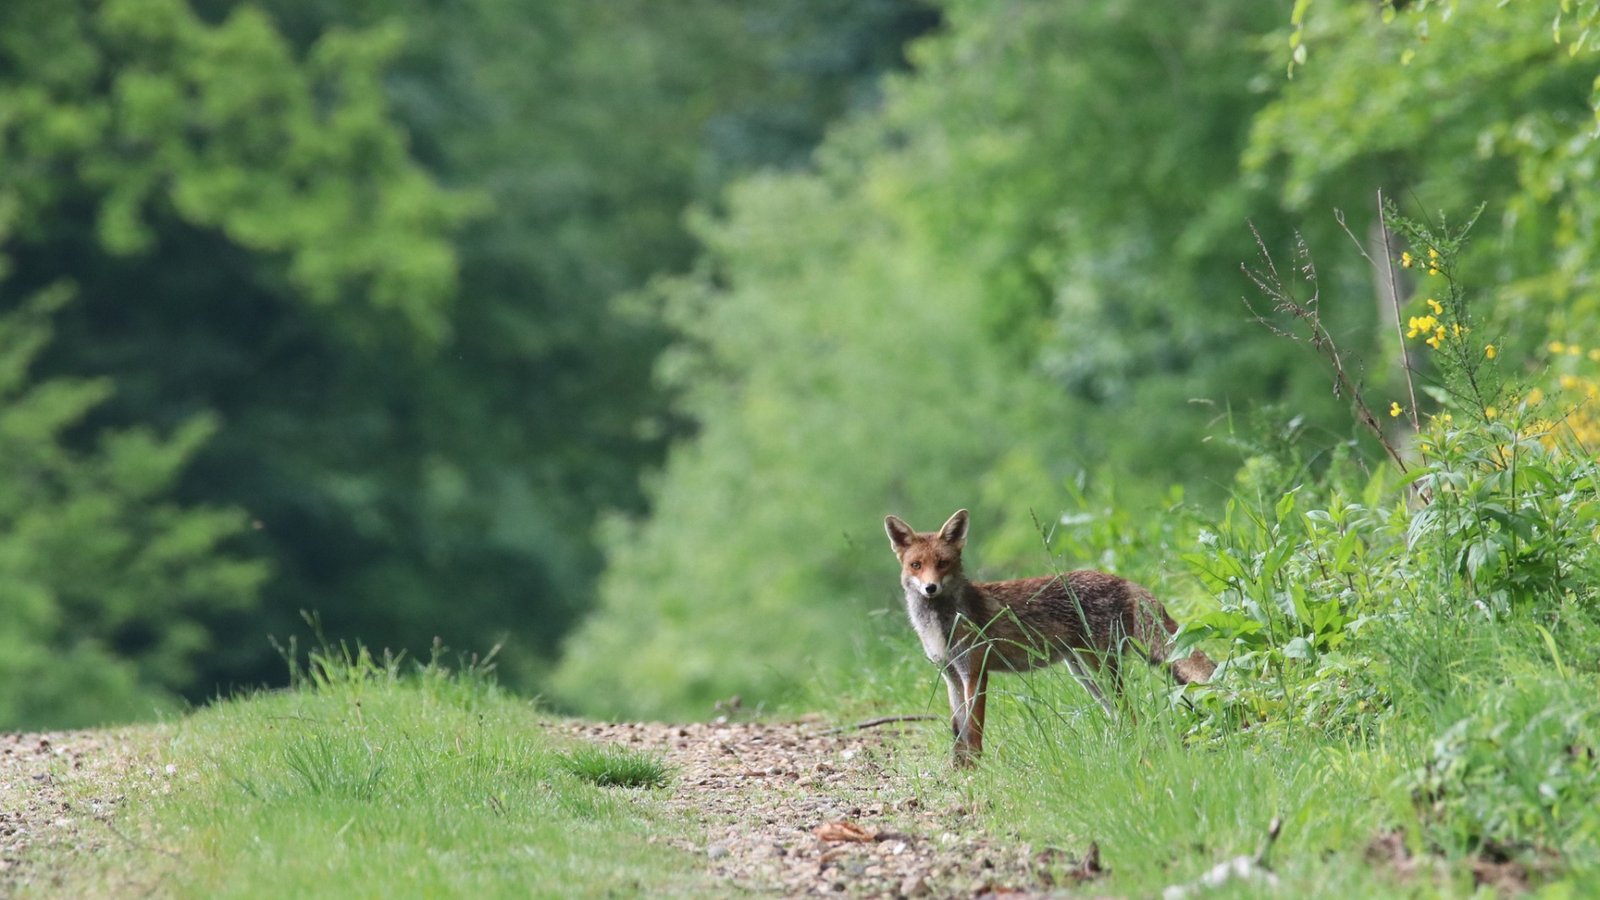 Der Fuchs gilt als schlau, seine Bejagung ist umstritten.  Foto: Pixabay/Nathalieburblis